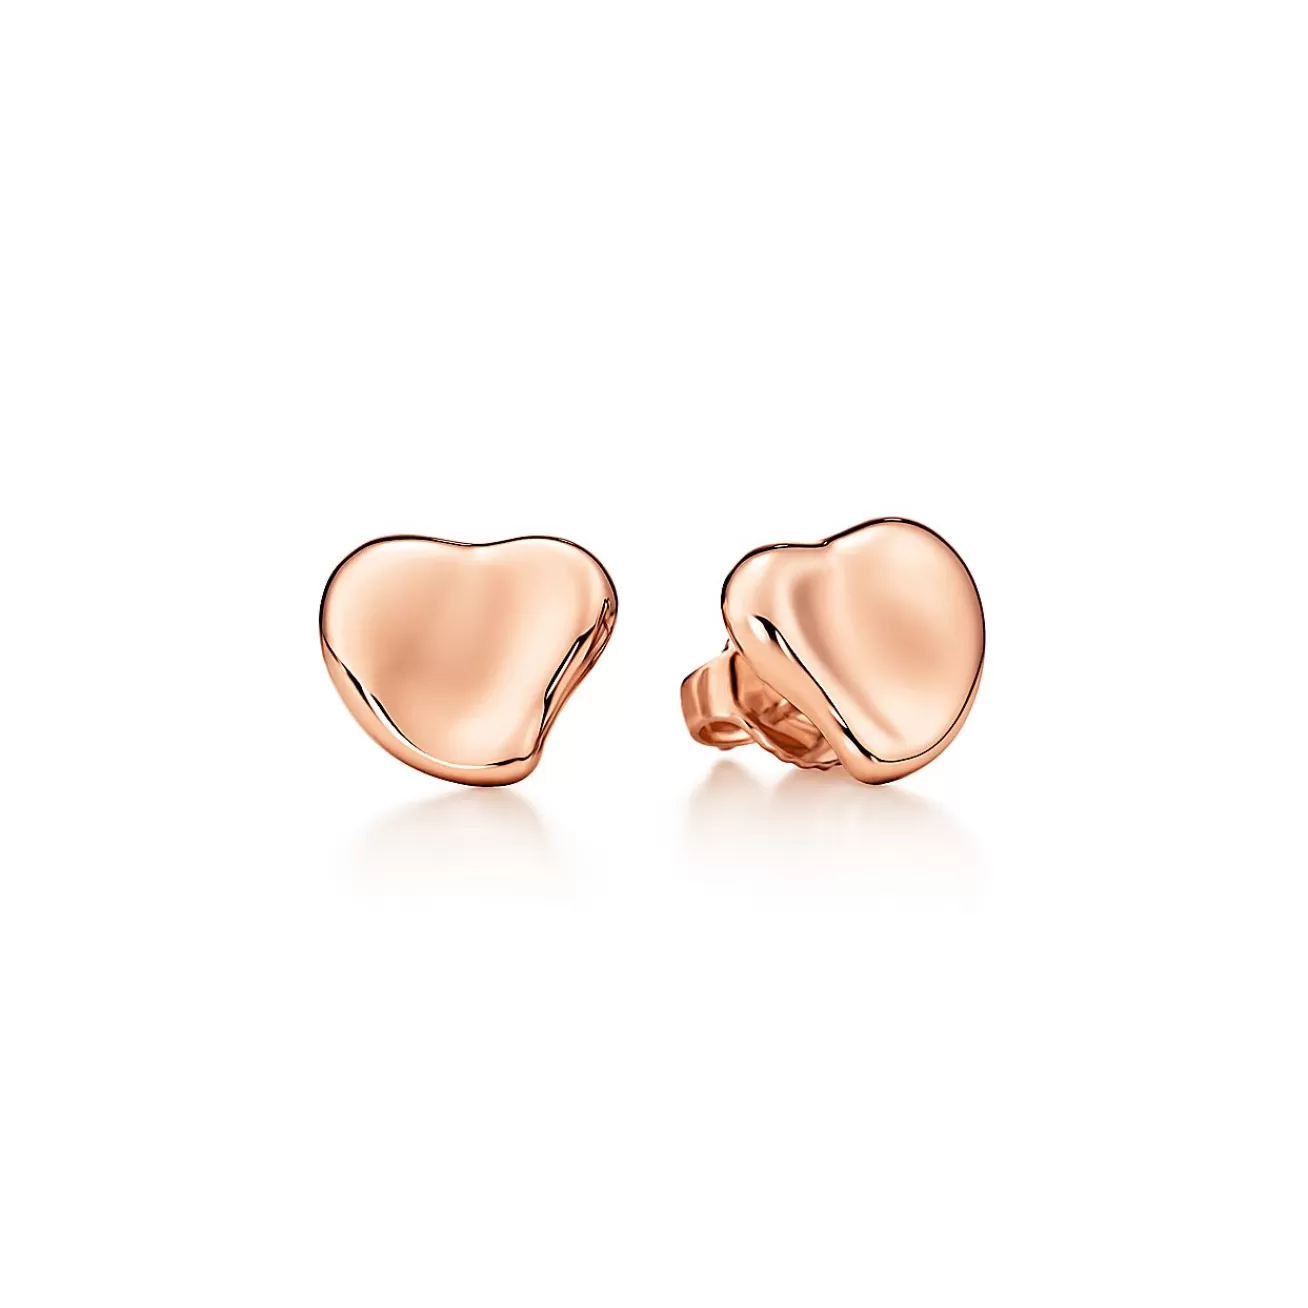 Tiffany & Co. Elsa Peretti® Full Heart earrings in 18k rose gold, 10 mm. | ^ Earrings | Rose Gold Jewelry